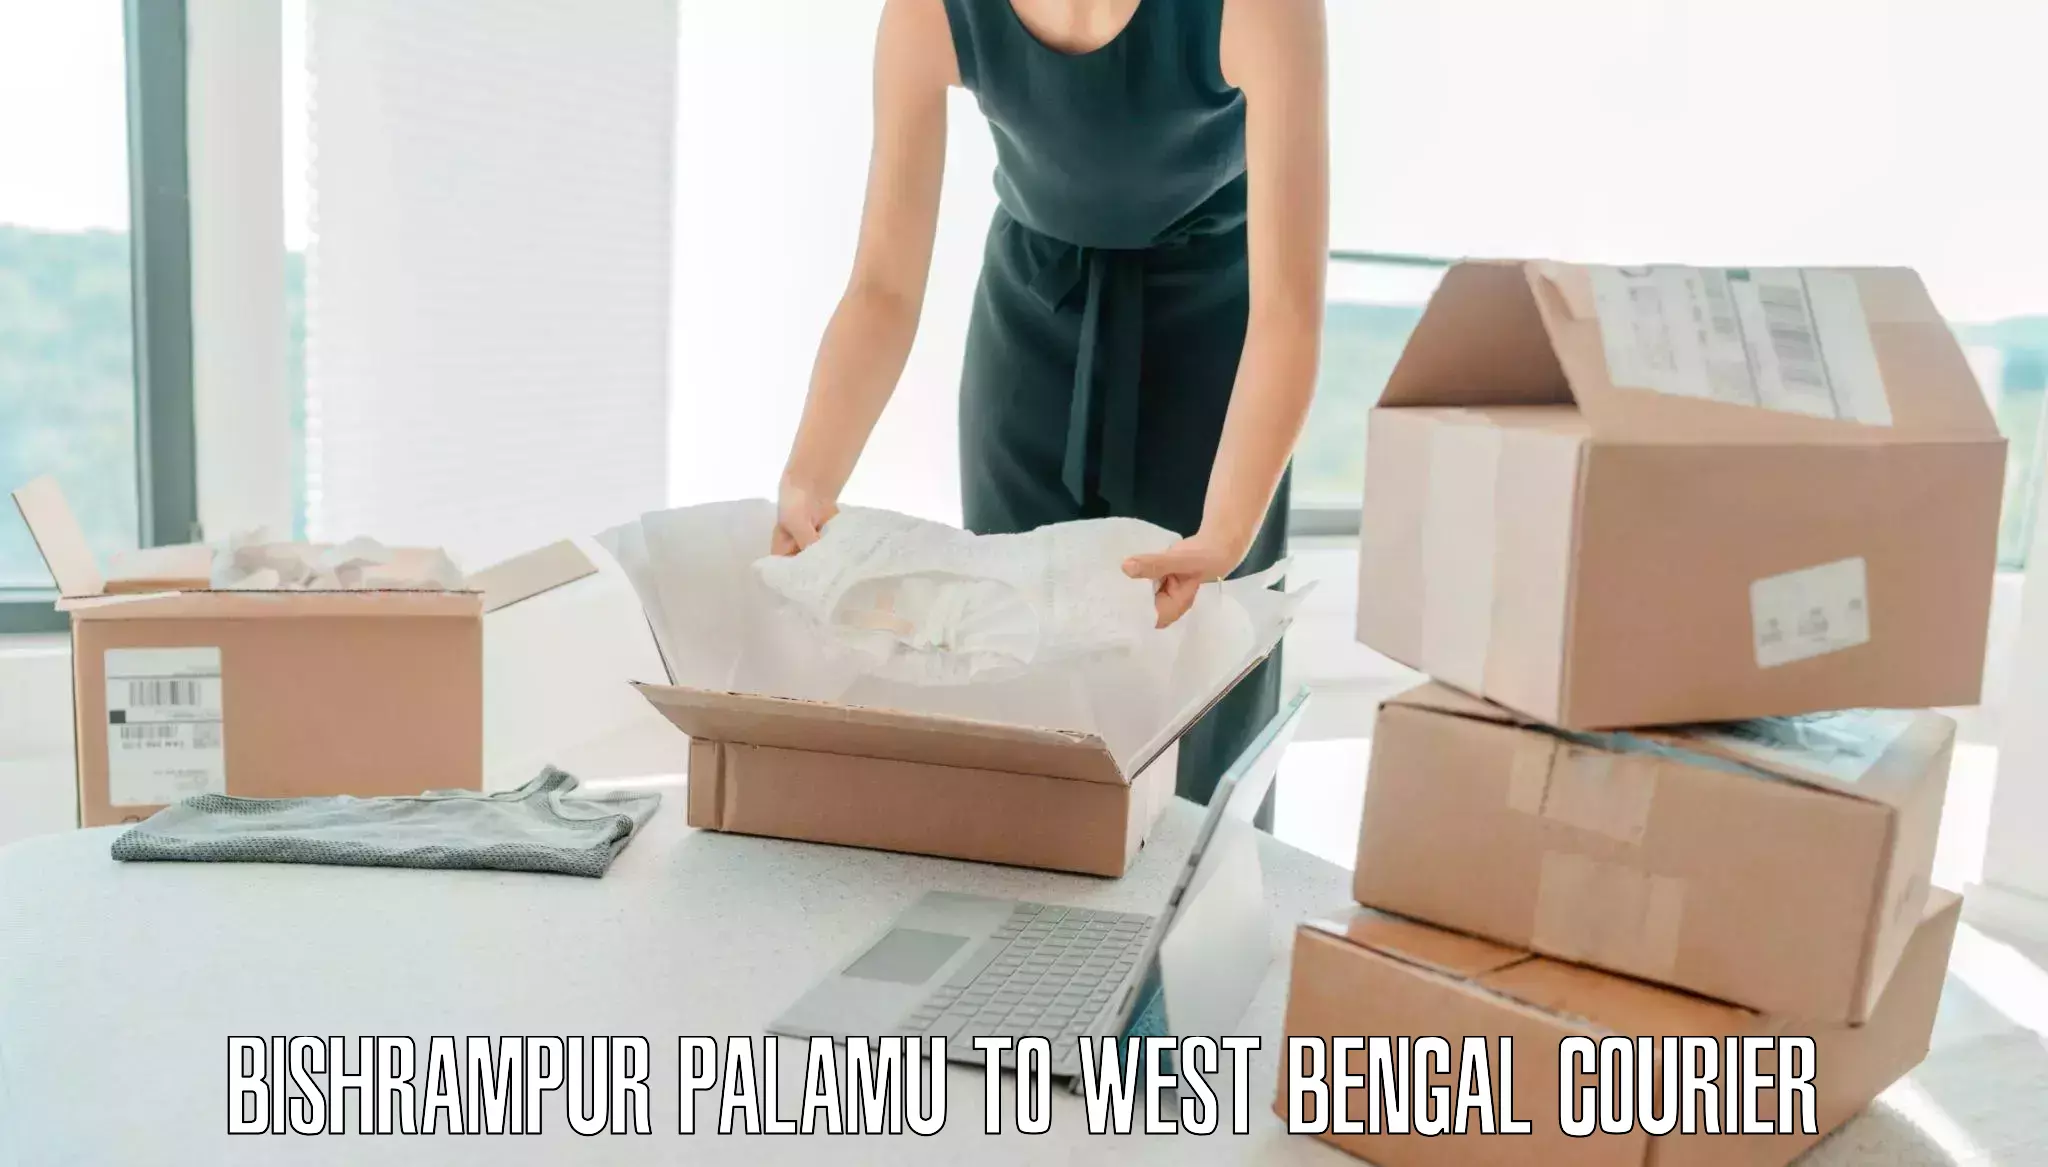 Professional baggage transport Bishrampur Palamu to West Bengal